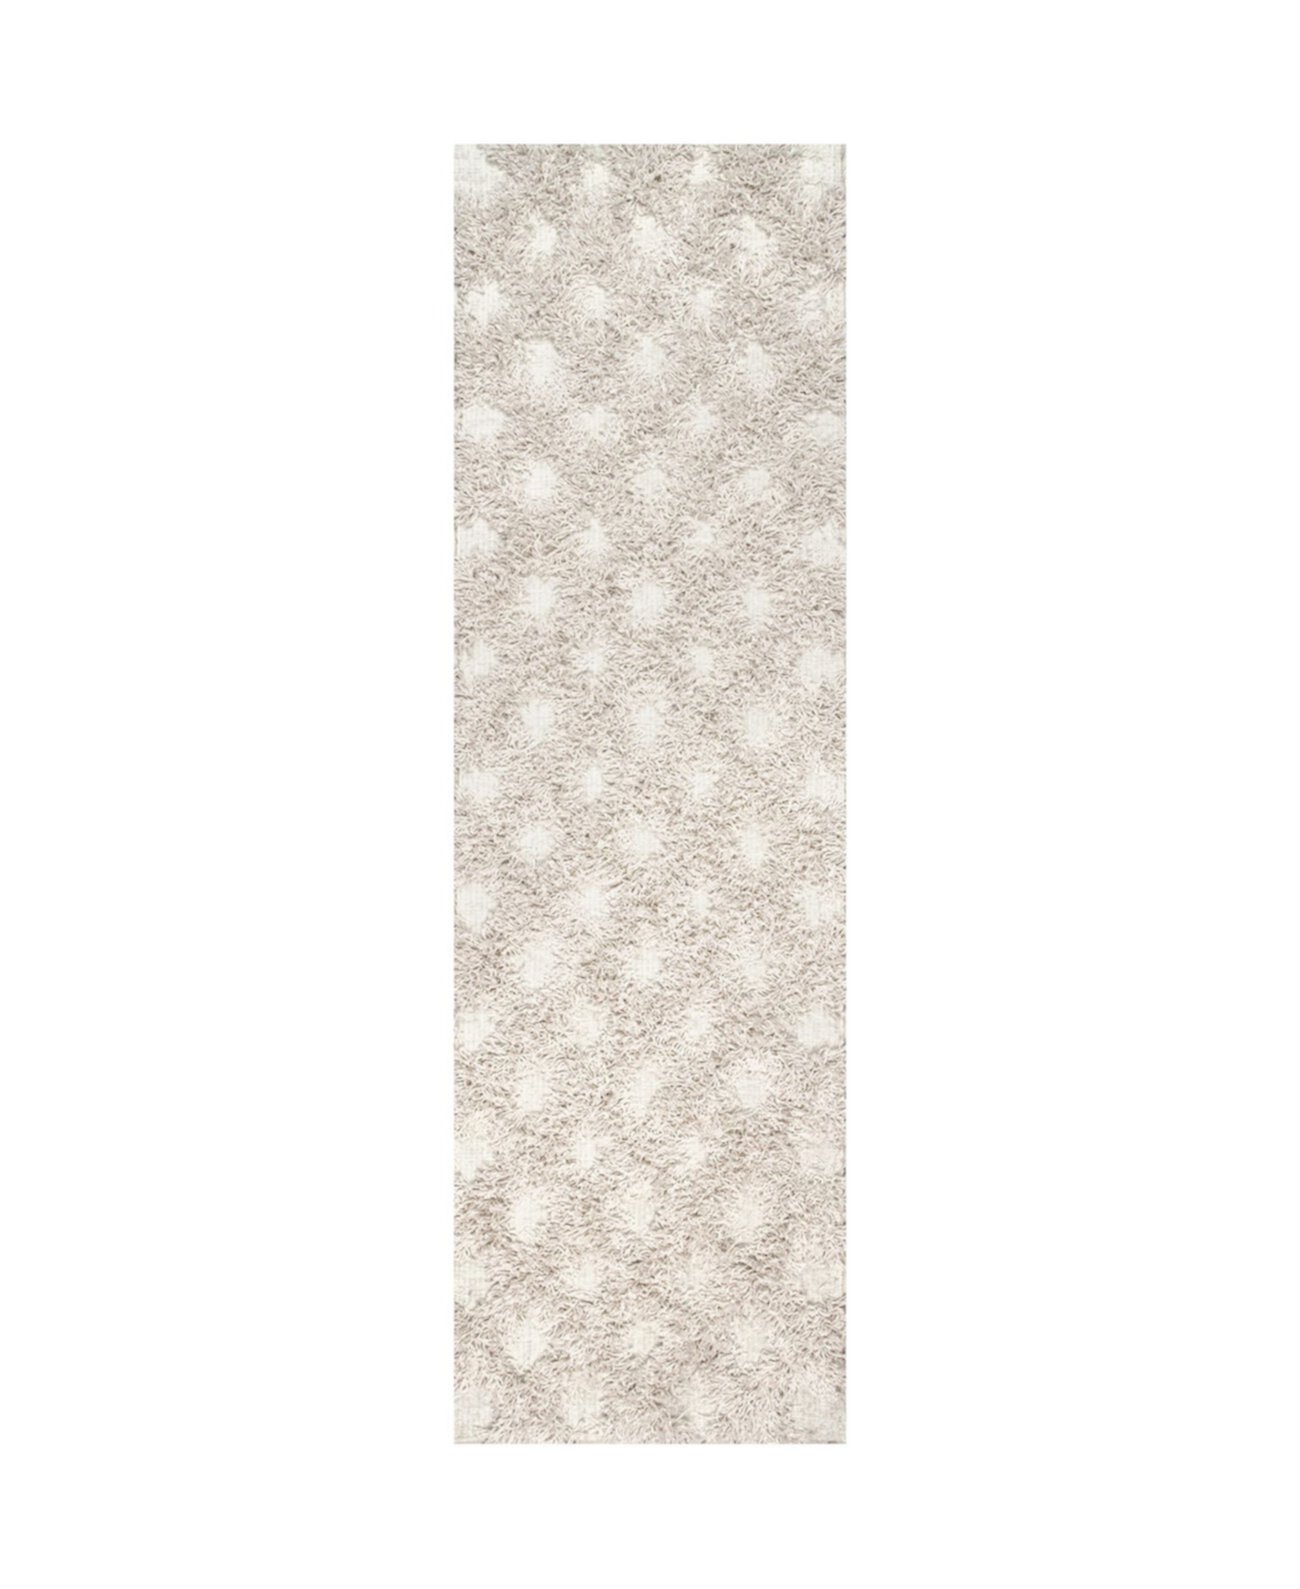 Французский коврик BDFR01A цвета слоновой кости размером 2 фута 5 x 9 футов 6 дюймов NuLOOM